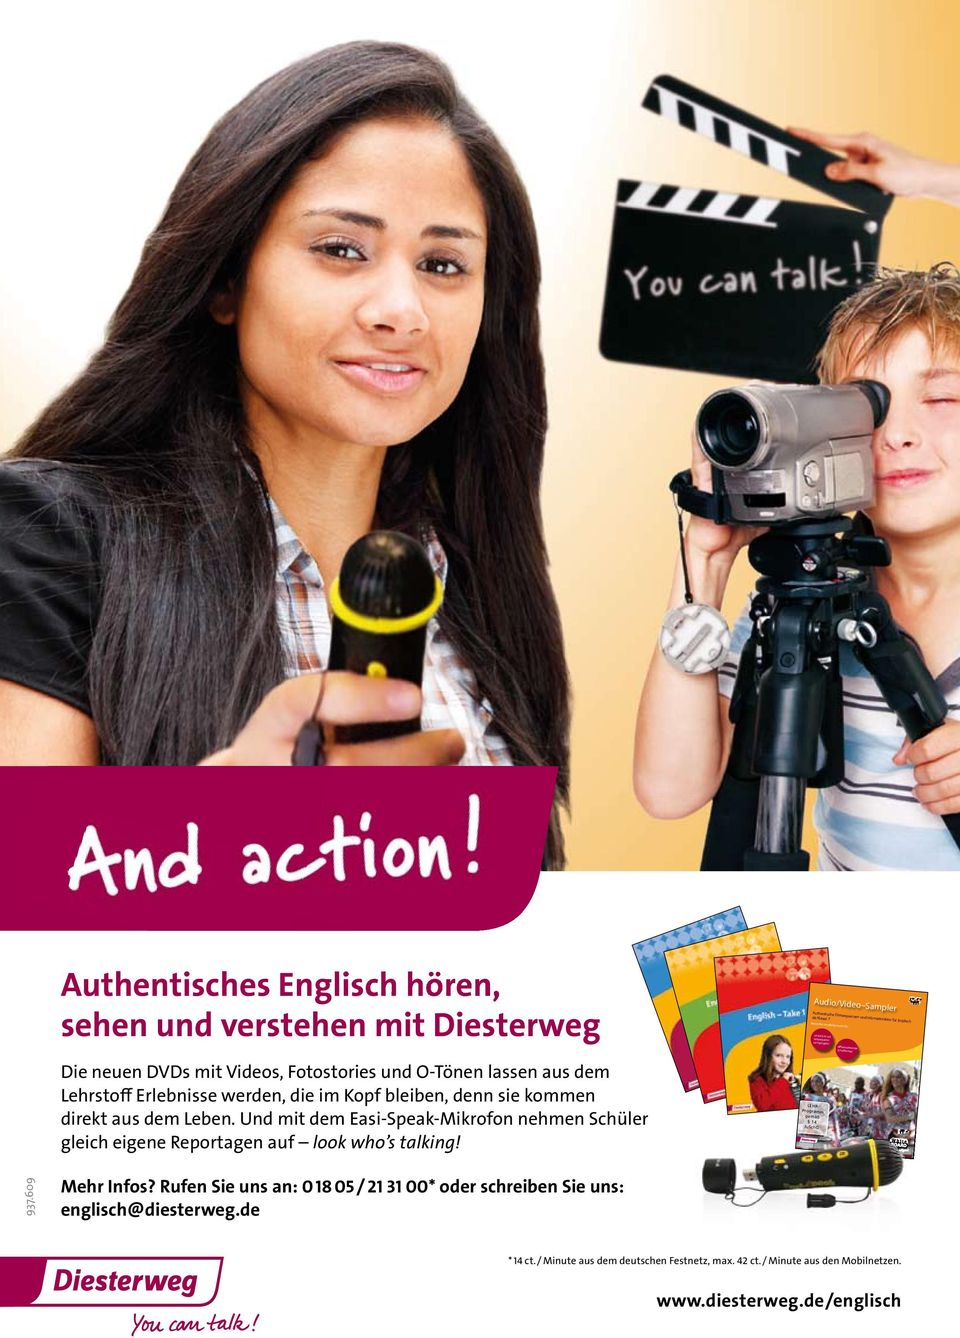 Der DIESTERWEG AUDIO/VIDEO SAMPLER fördert das Hör-Seh-Verstehen von Englischlernenden gezielt und unterhaltsam.